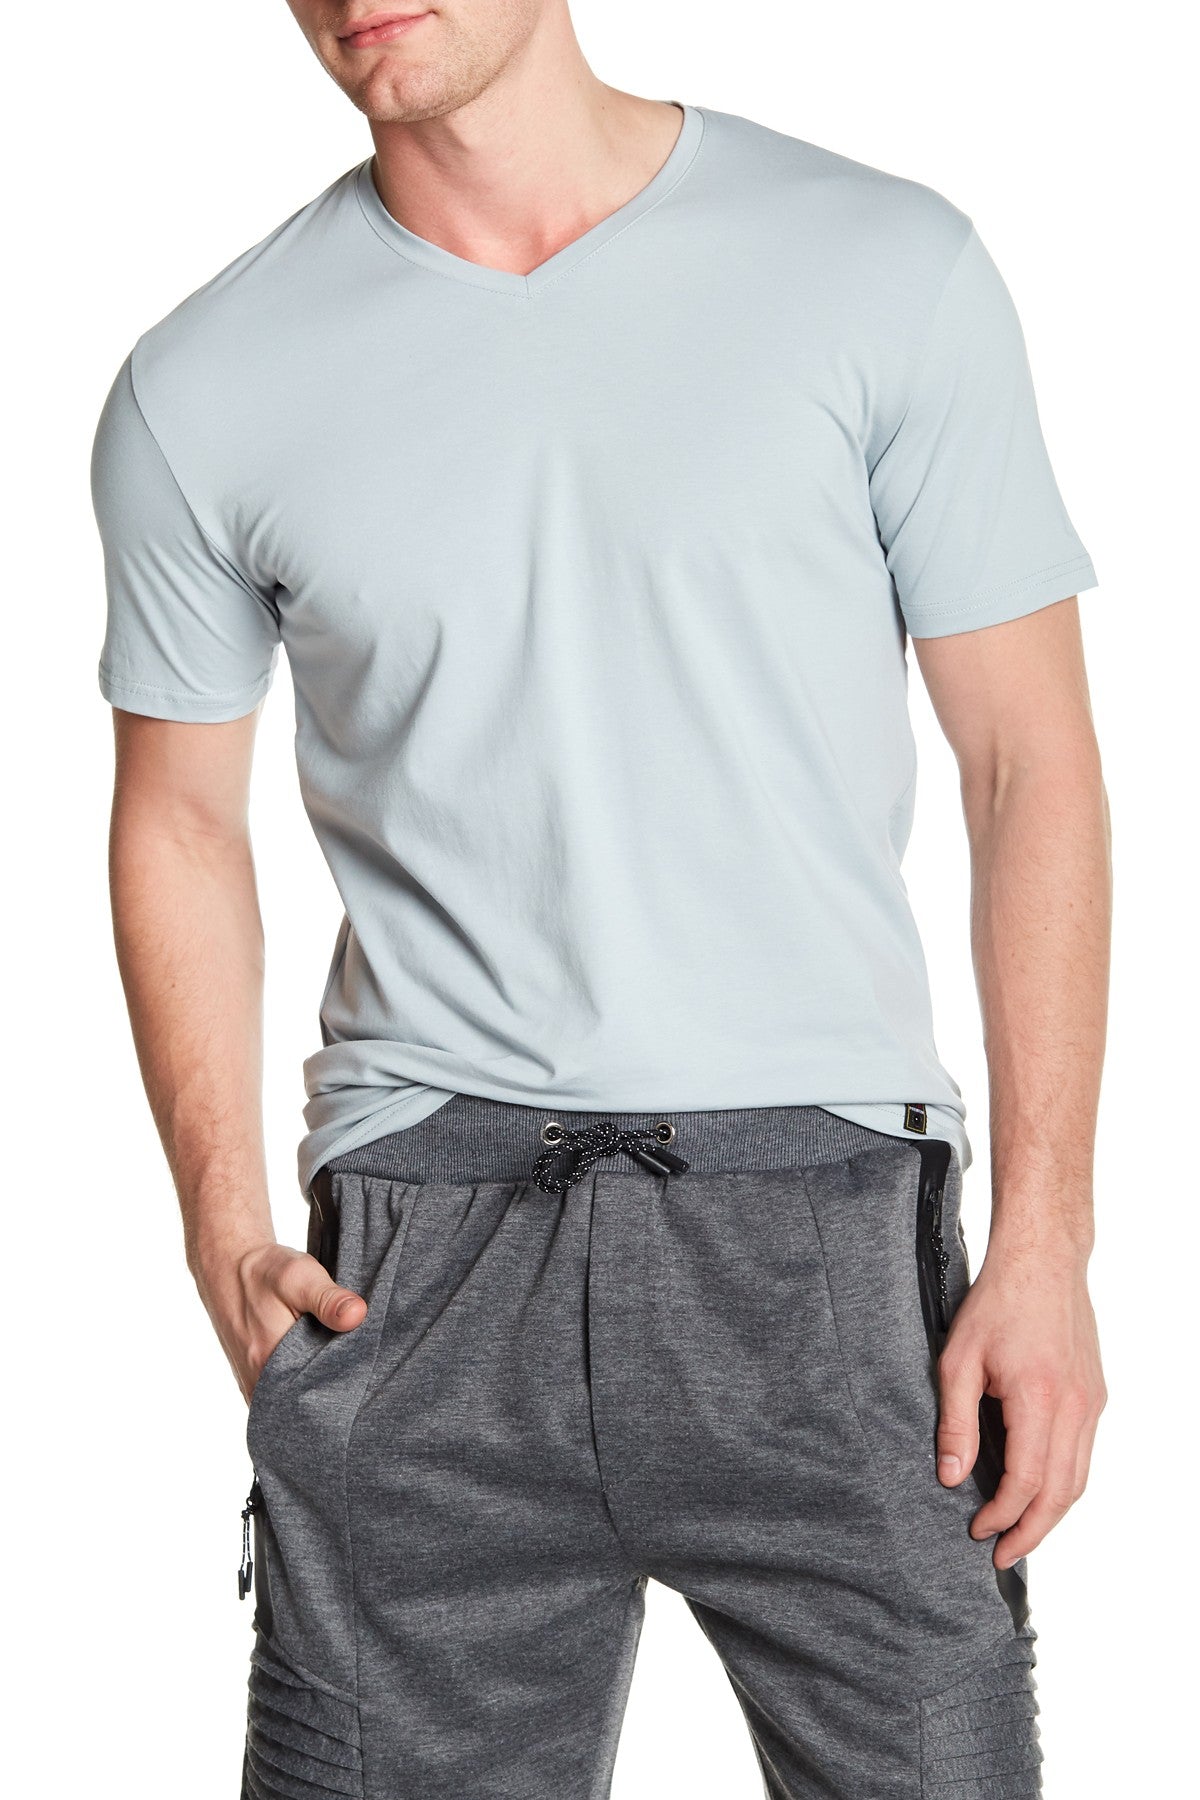 V-Neck Men's Solid T-Shirt